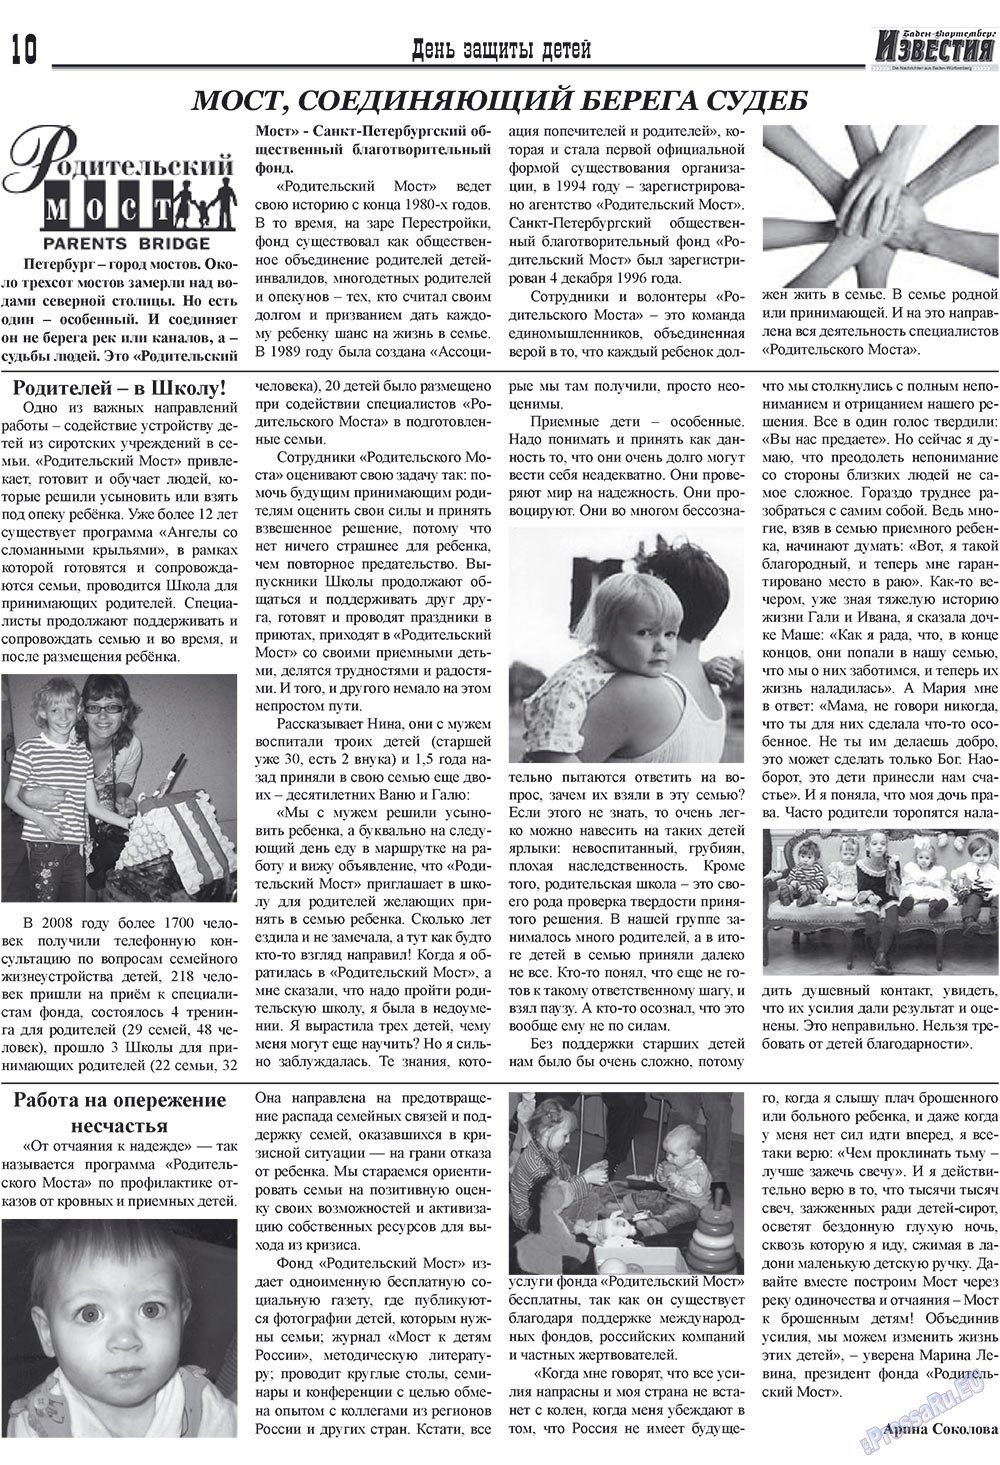 Известия BW, газета. 2009 №5 стр.10